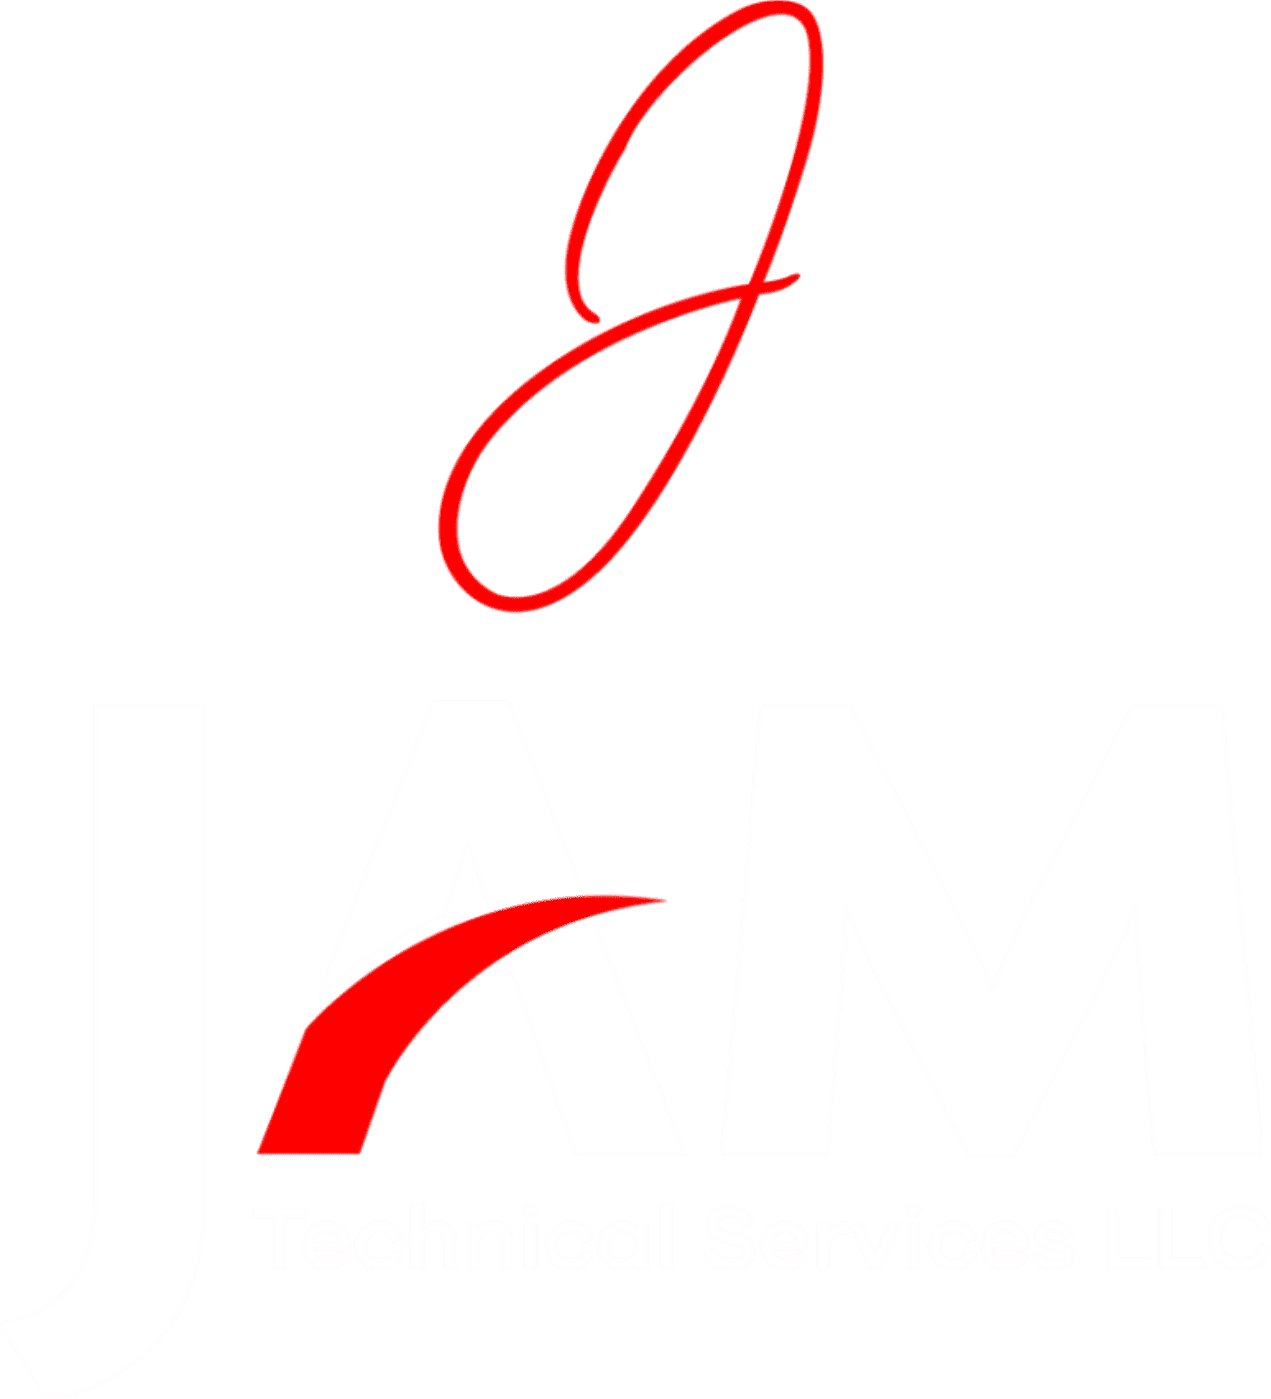 Home Renovation- JAMTS